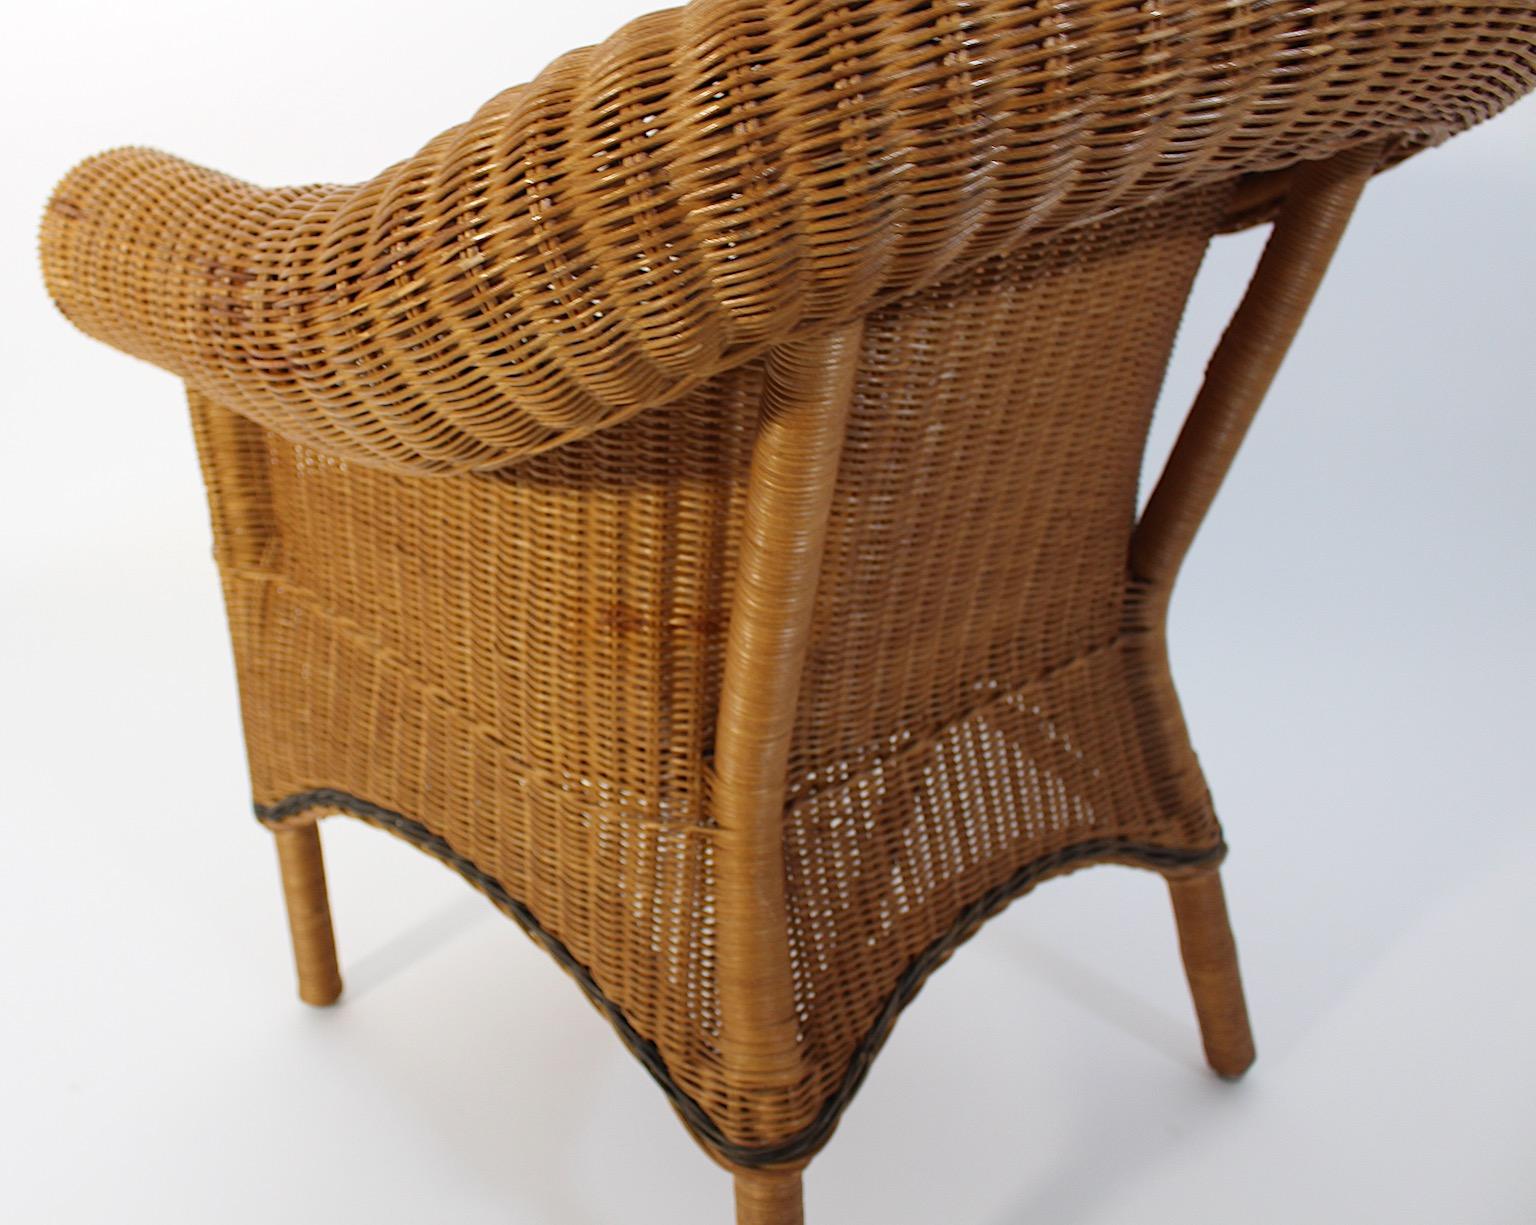 Jugendstil Vintage Rattan Armchair Lounge Chair Prag-Rudniker Korbwaren c 1910 For Sale 3